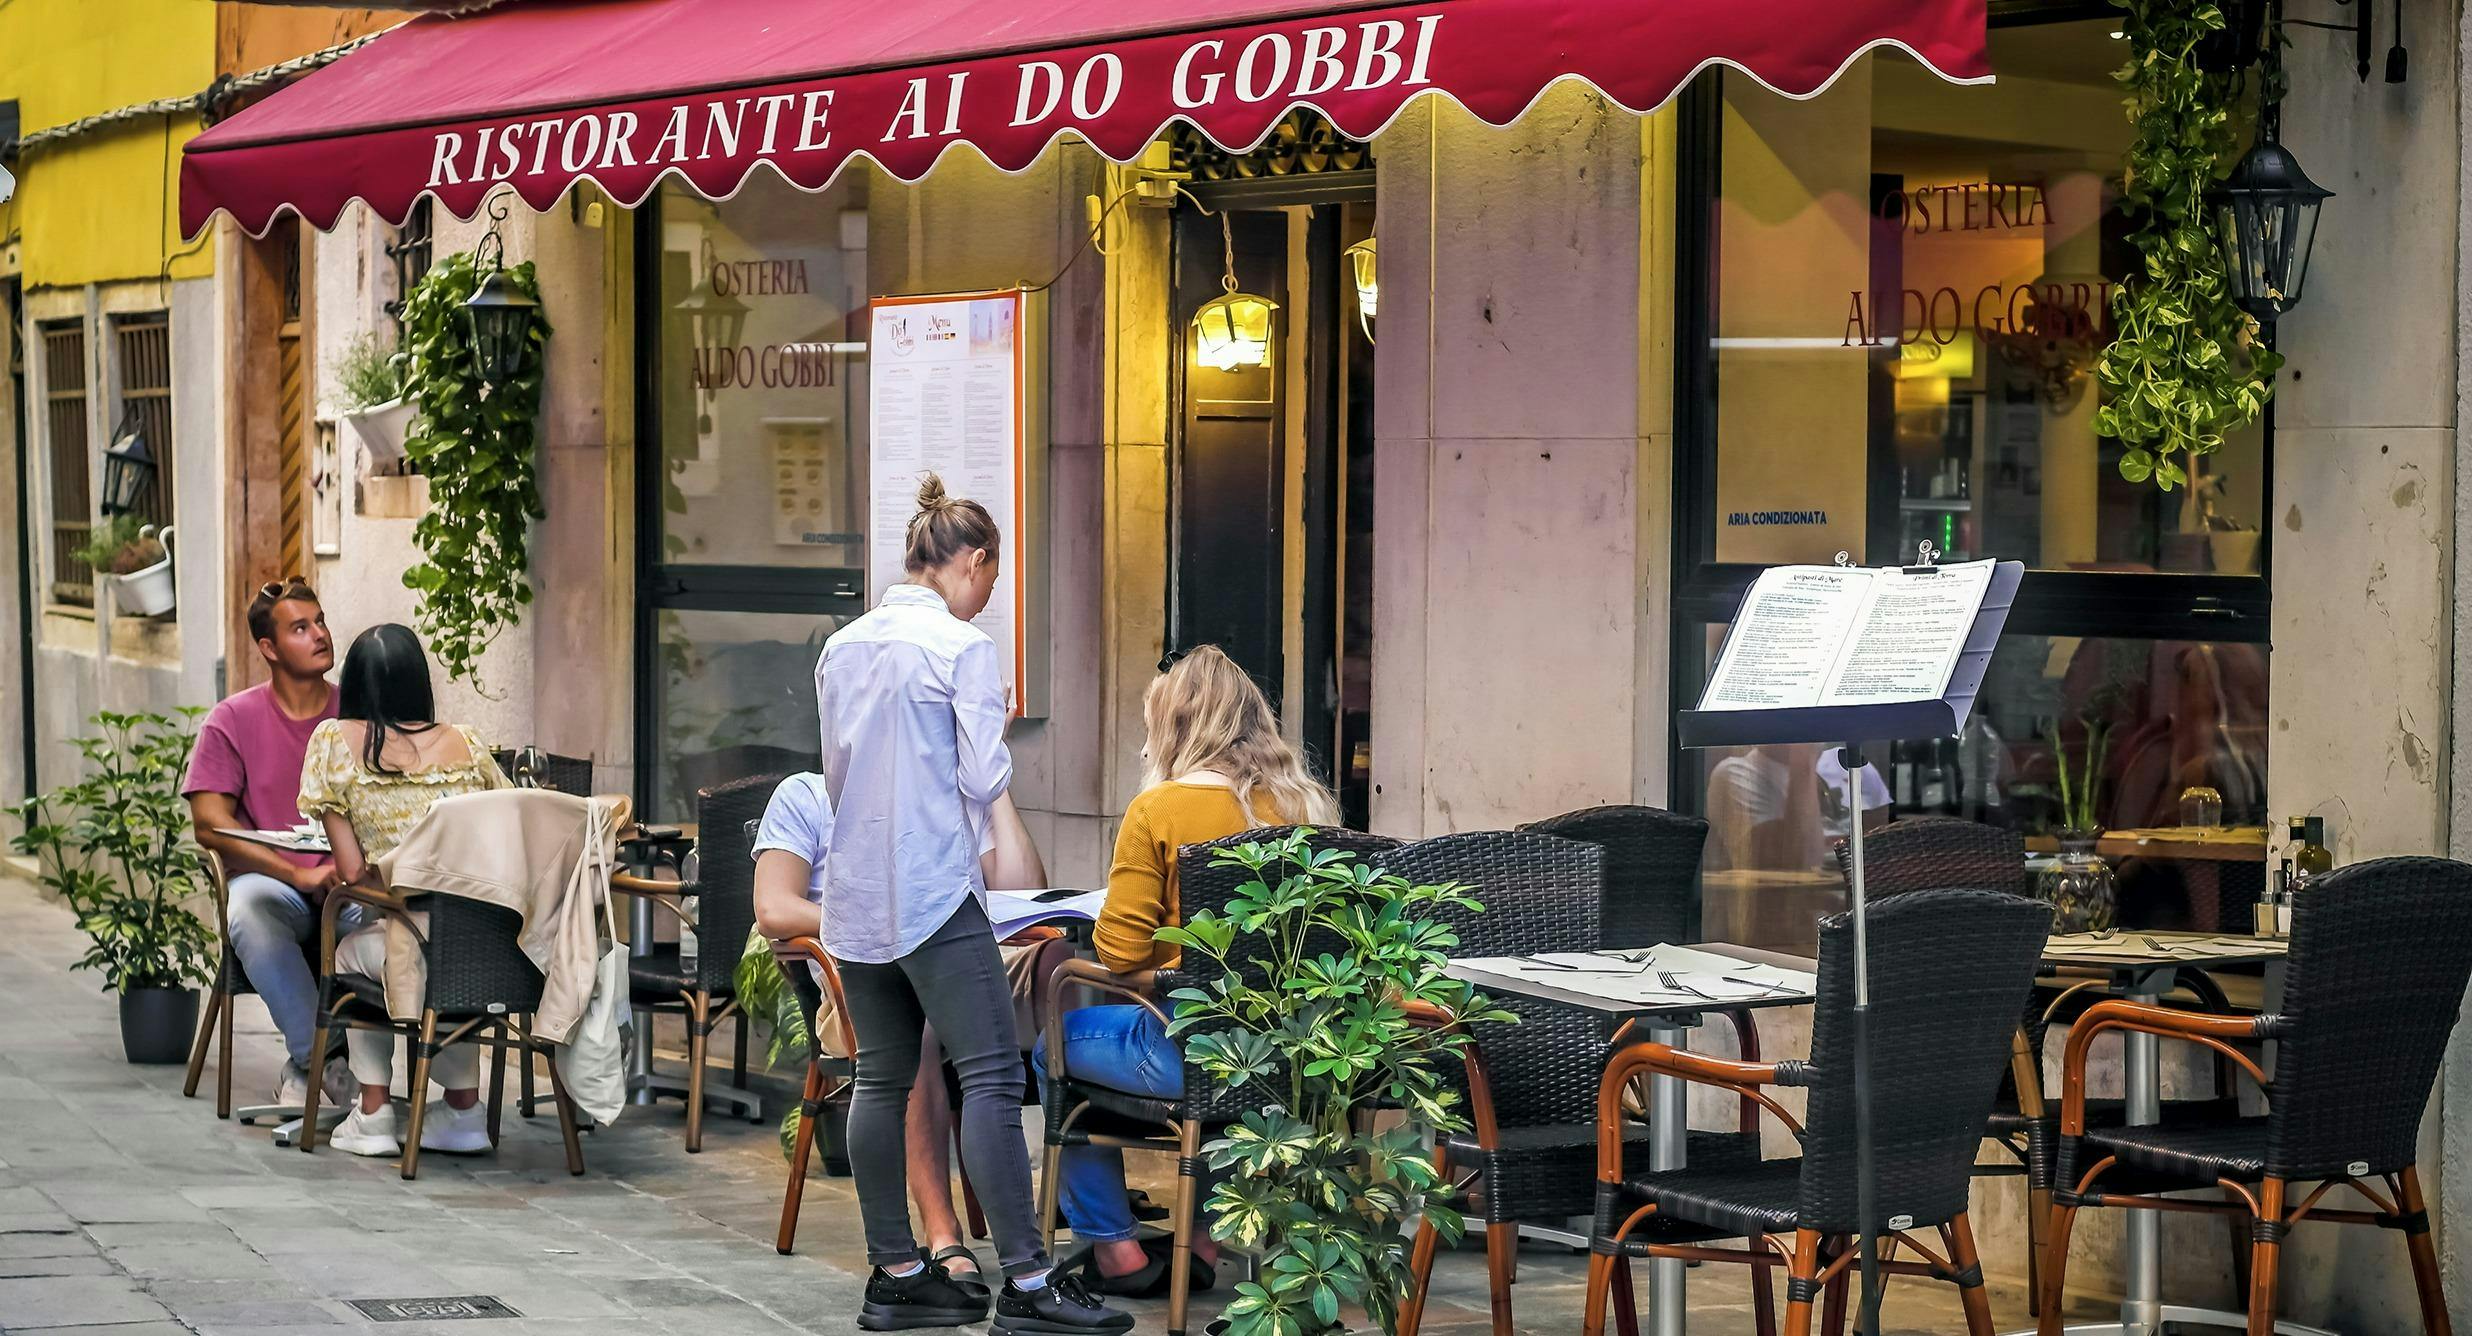 Photo of restaurant Osteria Ai Do Gobbi in Castello, Venice